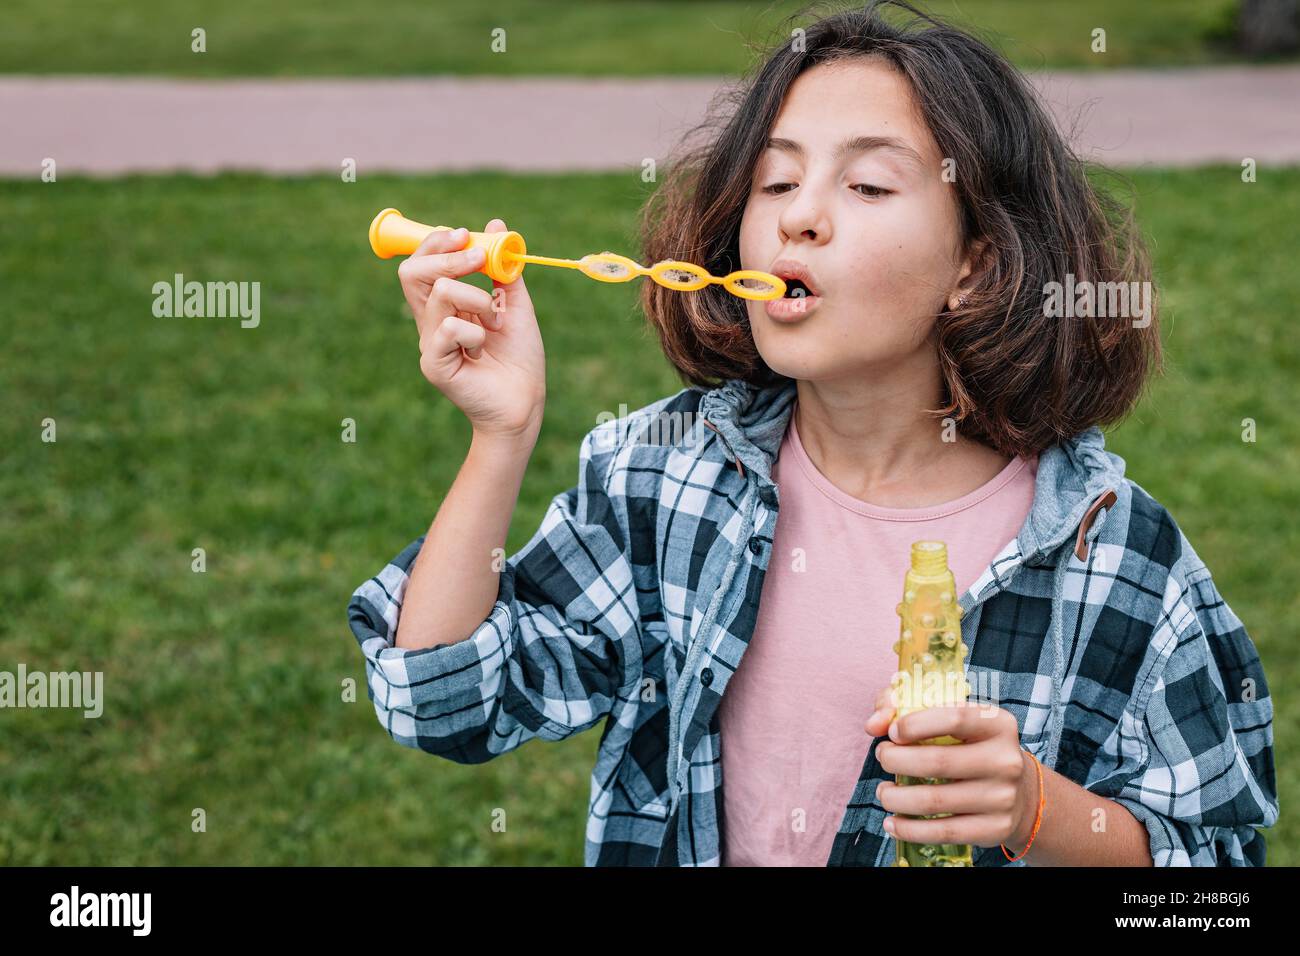 Jolie écolière d'origine caucasienne soufflant de bulles de savon.Portrait d'une jolie fille brune s'amusant dans un parc d'été.Em. Positif Banque D'Images